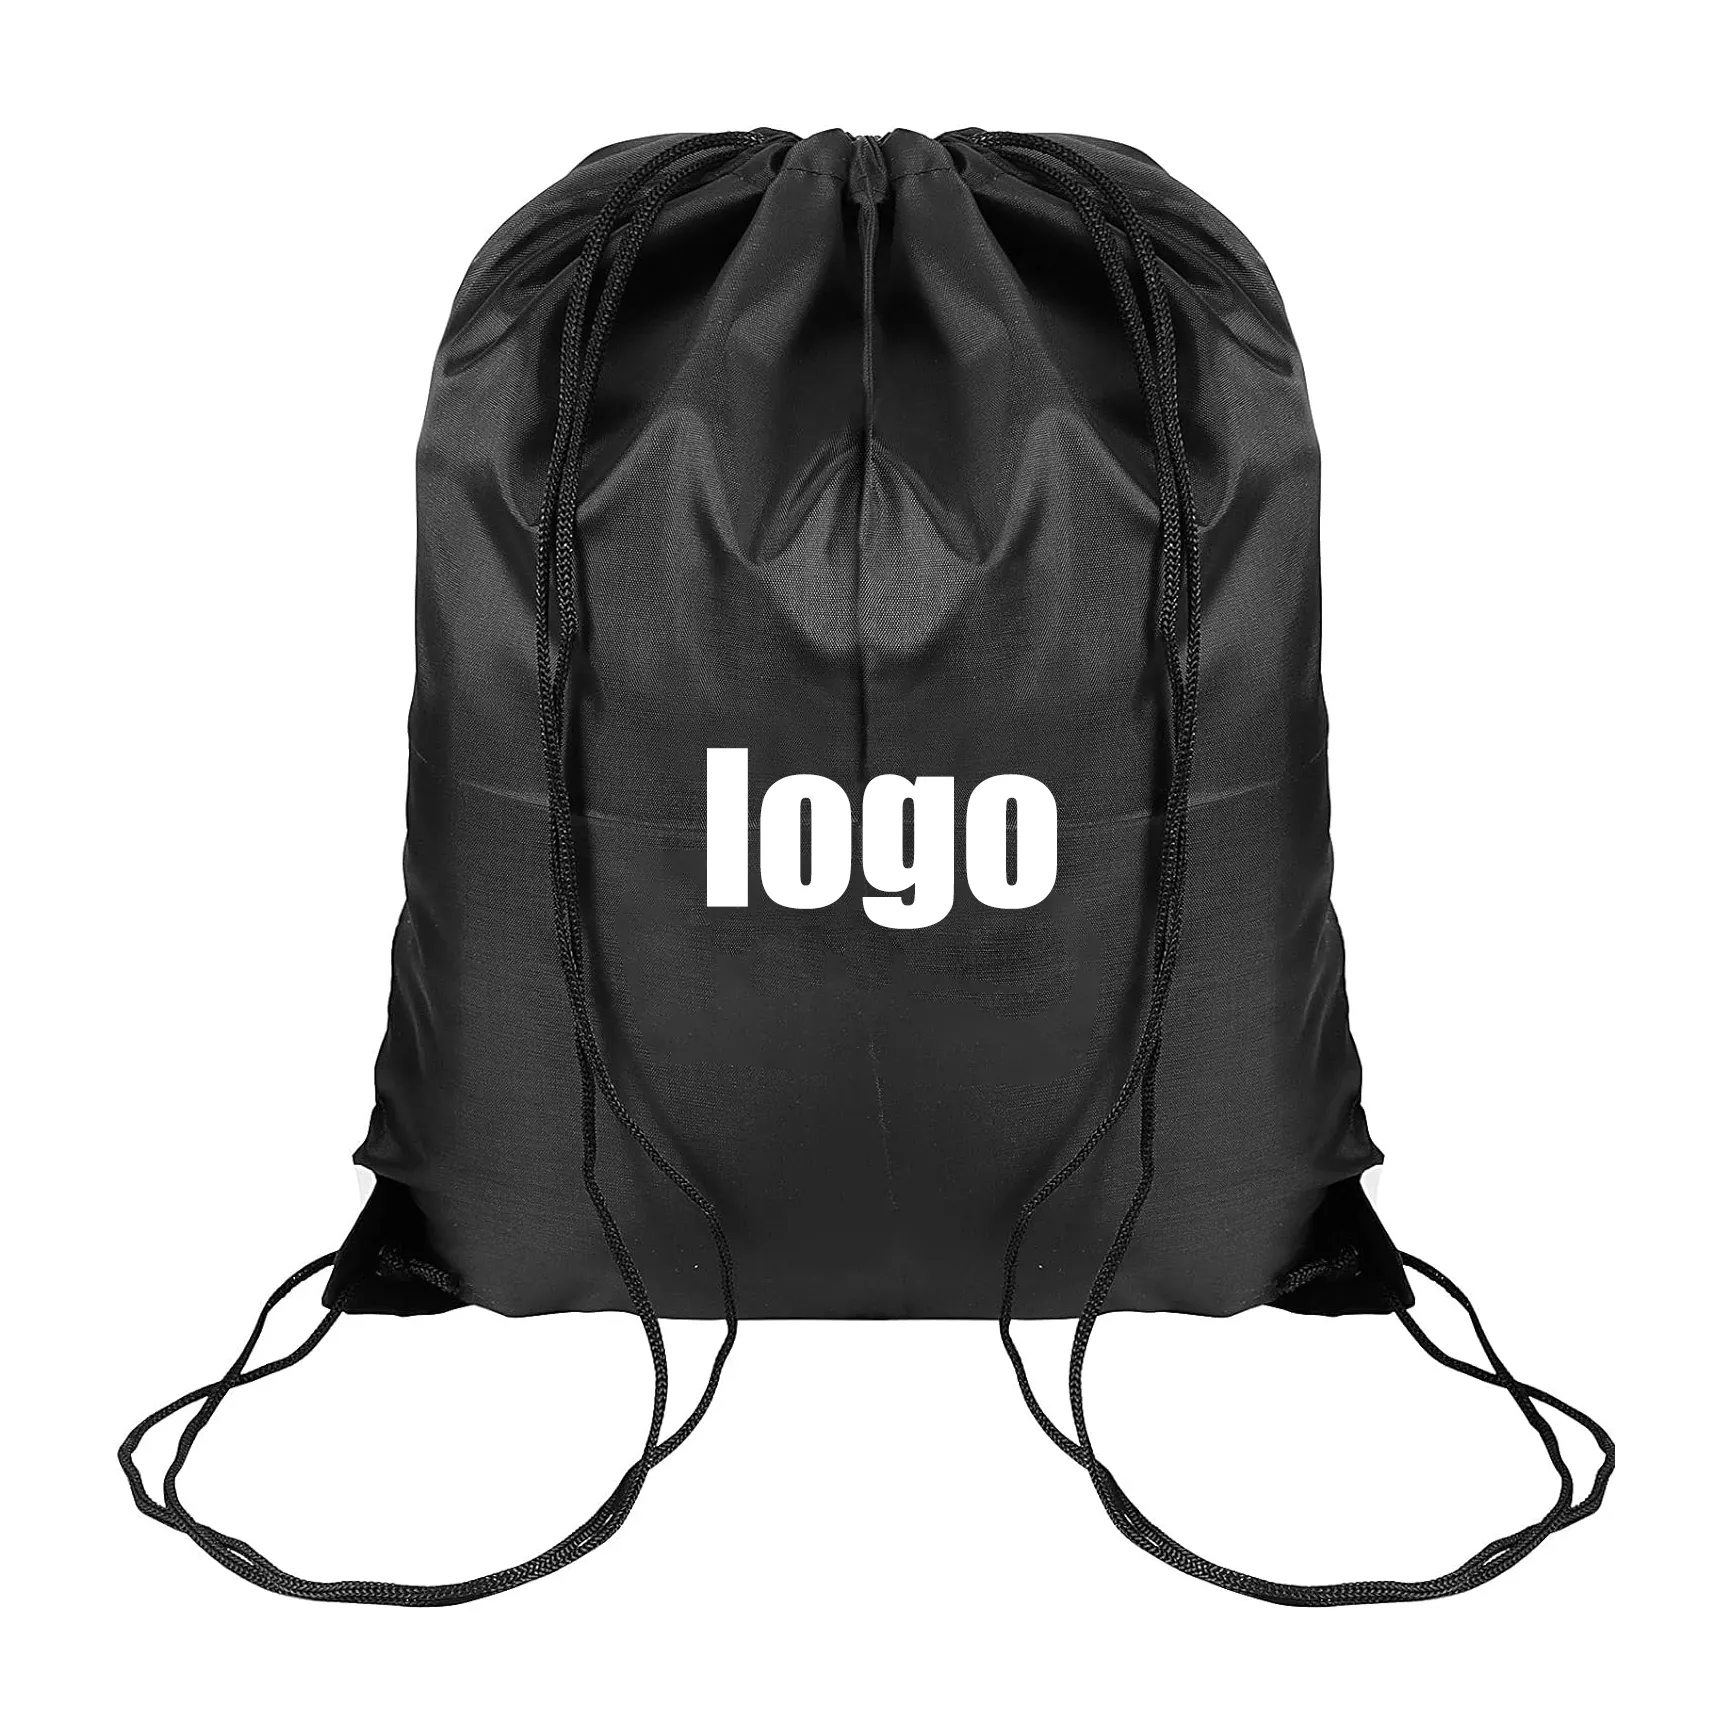 Mochila de poliéster para viagens barata, mochila portátil para esportes, sacos pretos com cordão e logotipo impresso personalizado